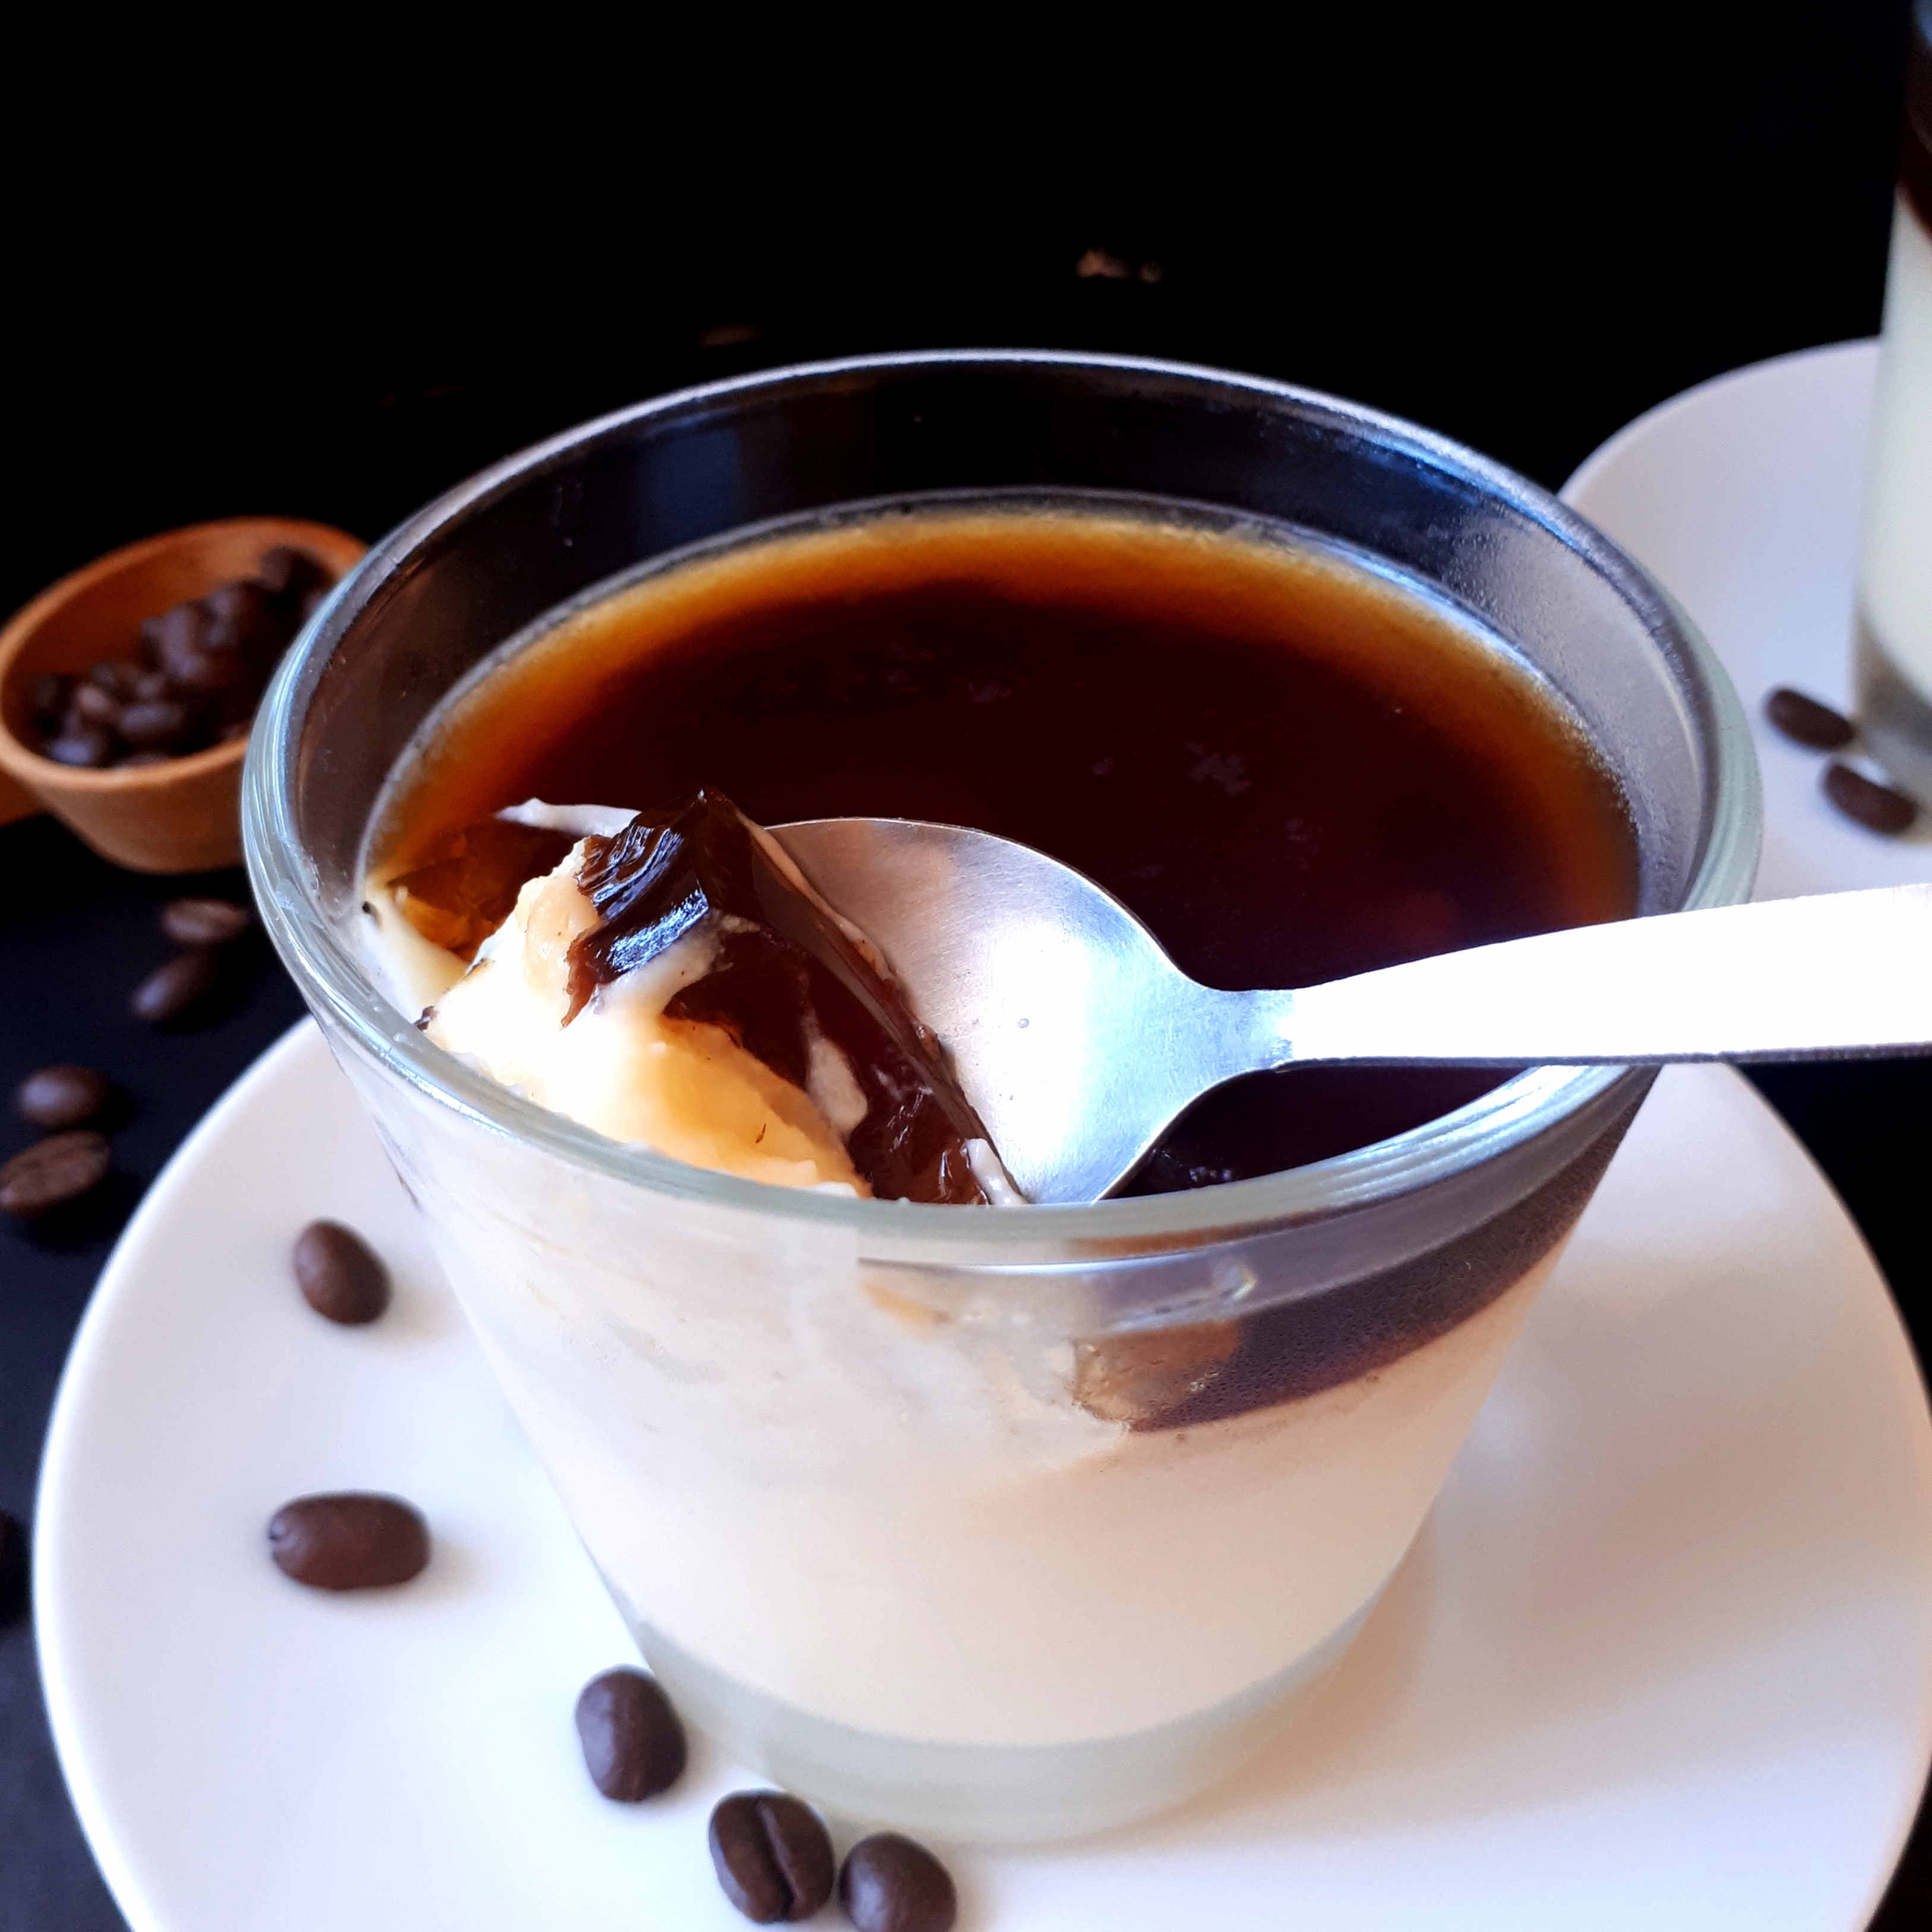 Dva poháre s vanikovým pudingom a vrstvou kávovej želatíny na bielych tanierikoch dve lyžičky na čiernom povrchu v pozadí odmerka na kávu okolo rozsypané kávové zrnká